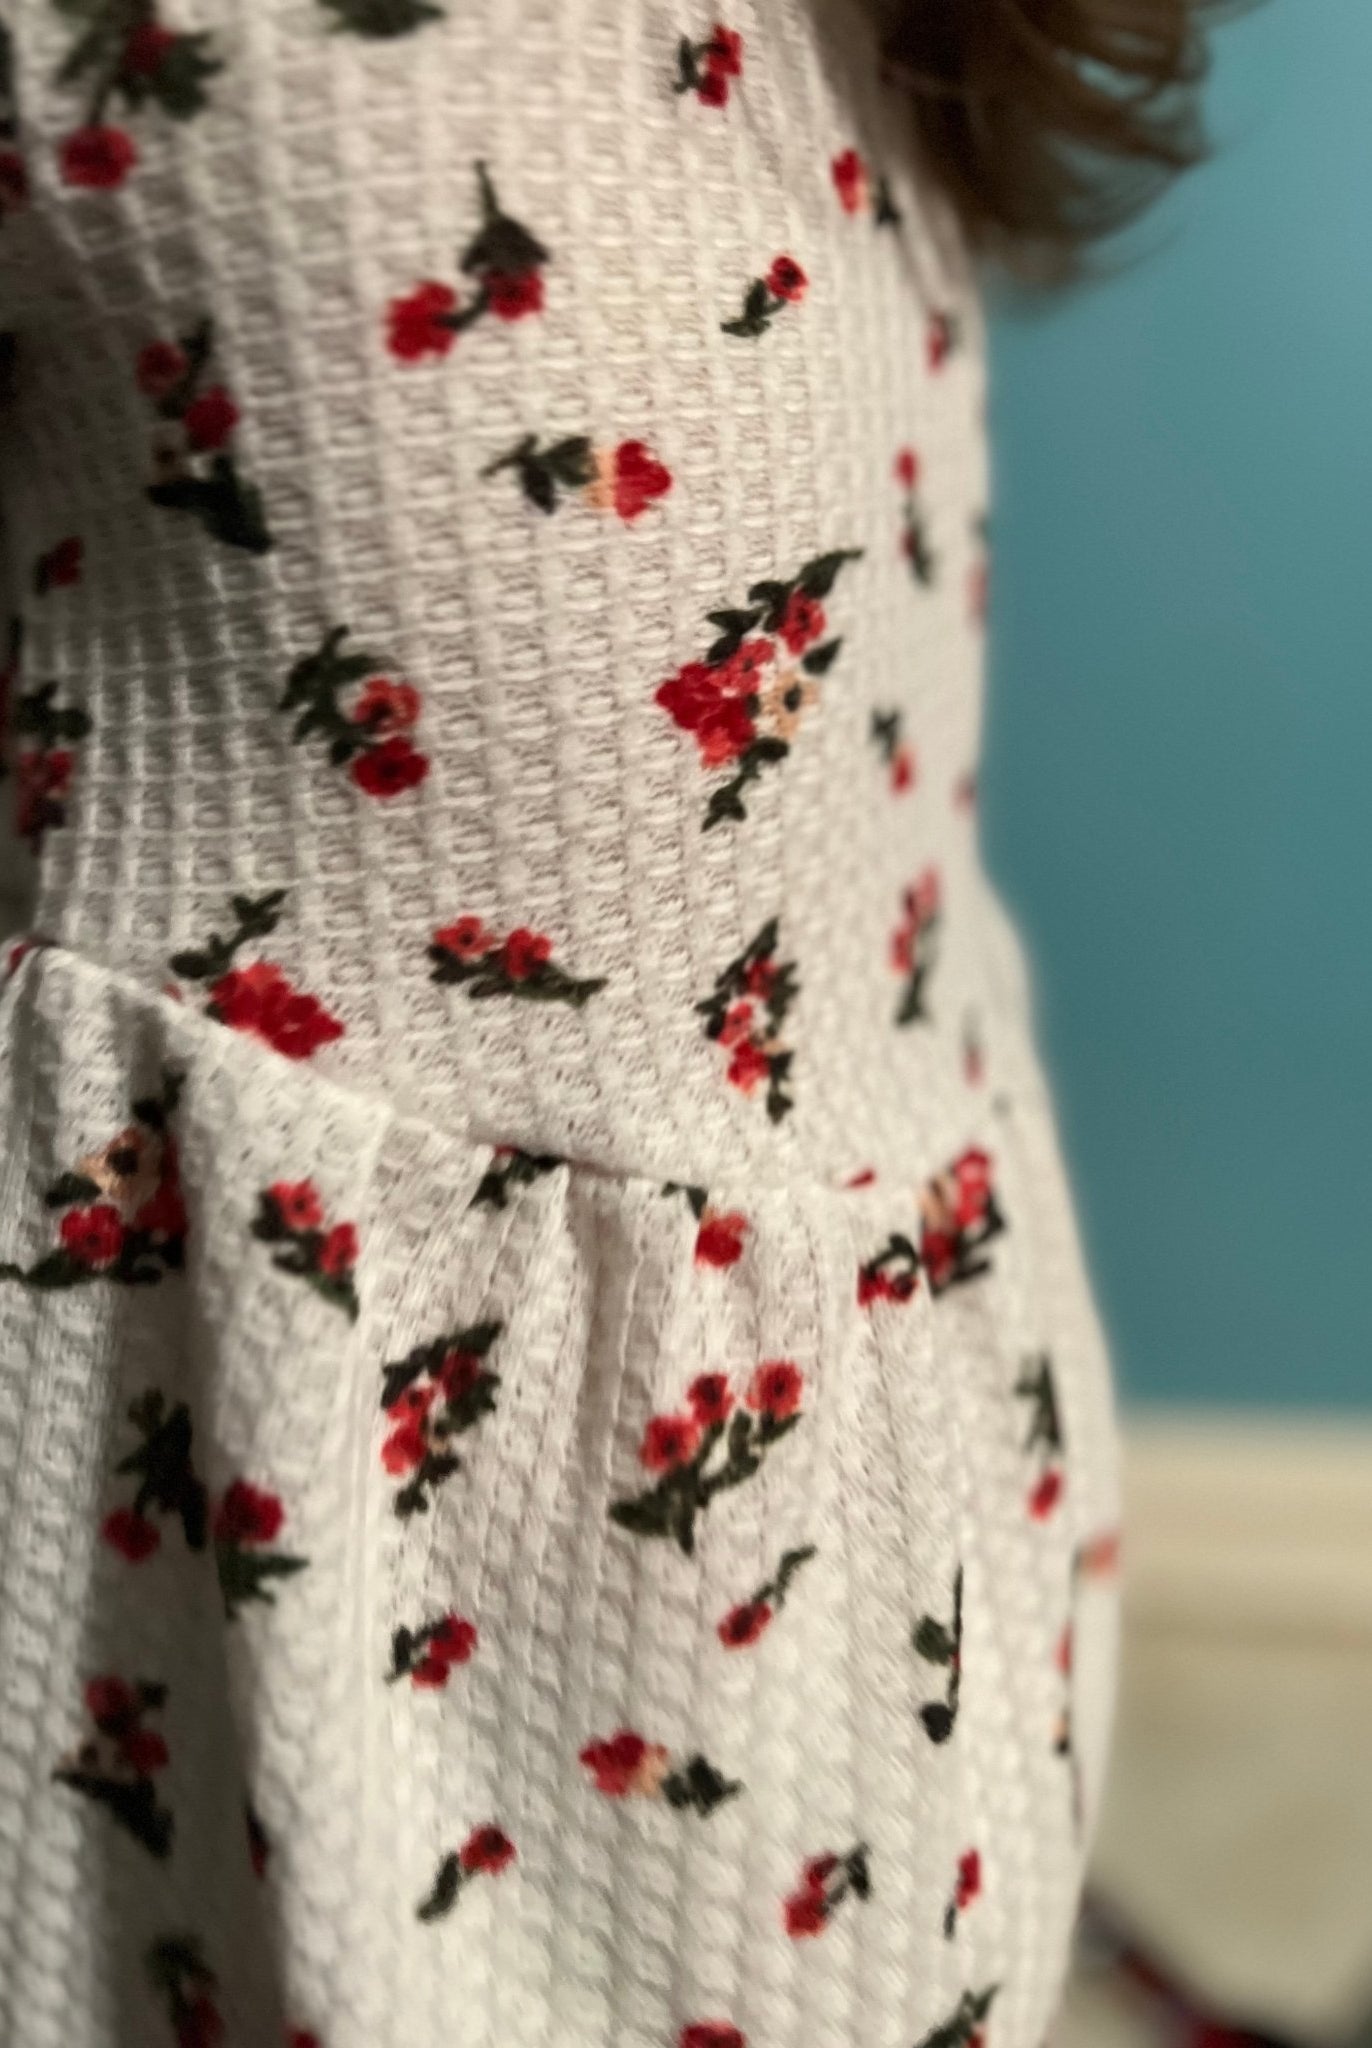 Simone Florals on White, Waffle Knit Fabric - Boho Fabrics